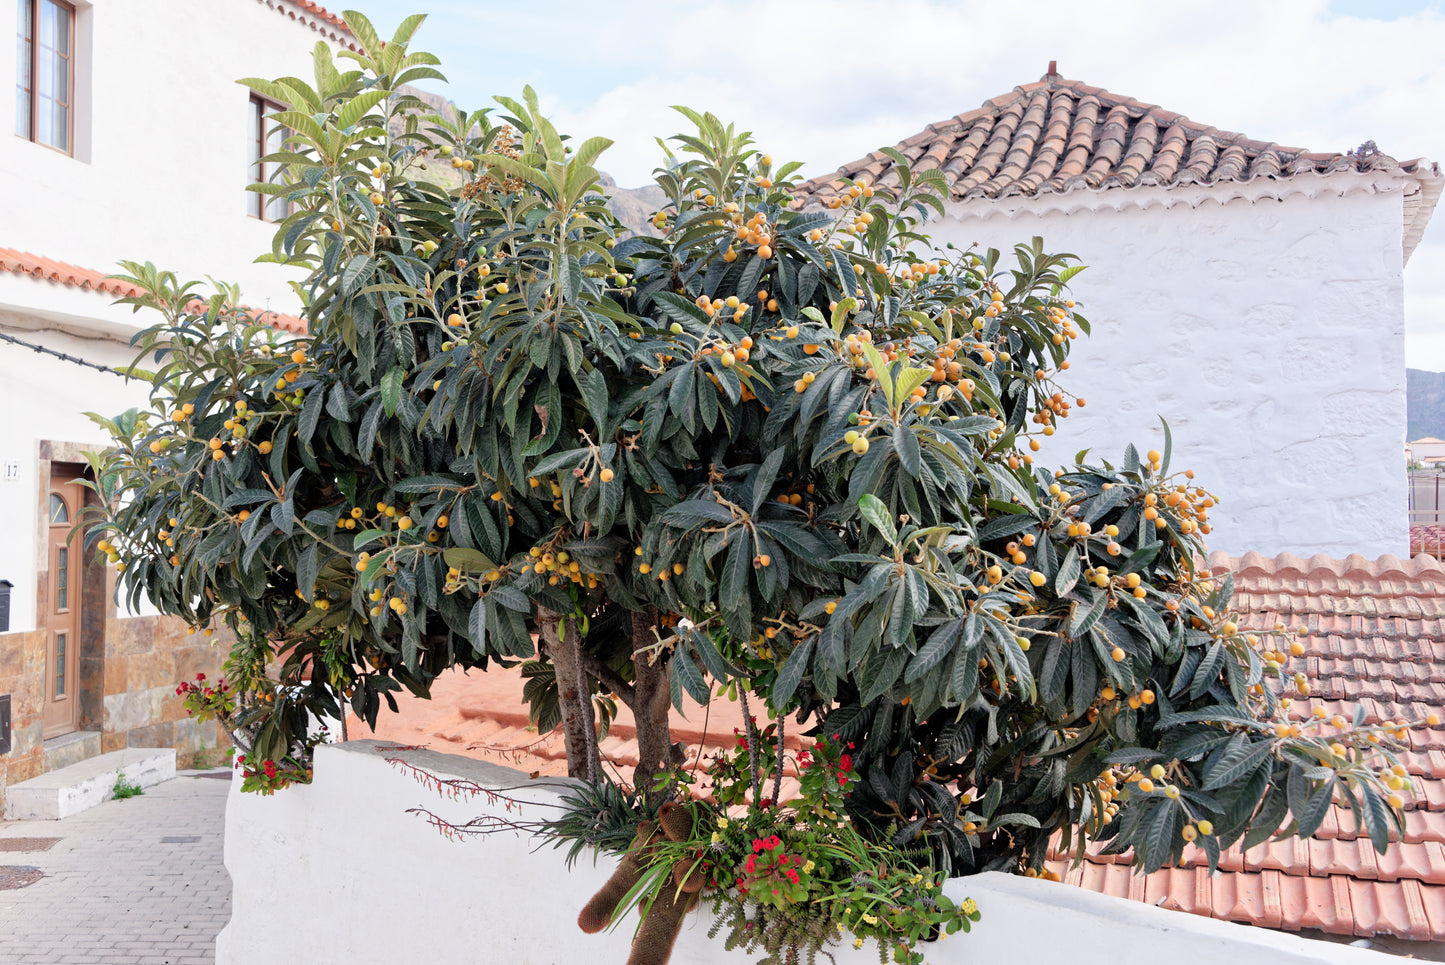 Flot træ af Japansk mispel (Eriobotrya japonica) med modne frugter